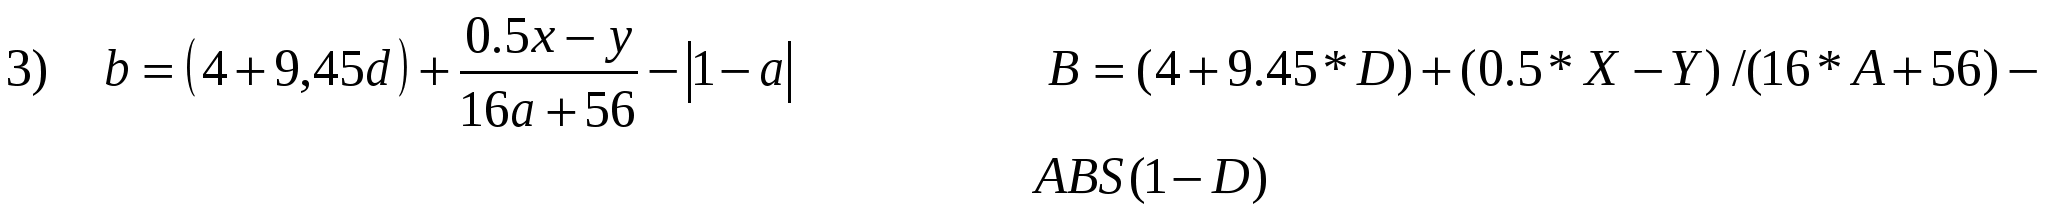 Урок Запись арифметических выражений на языке Бейсик (8 класс)